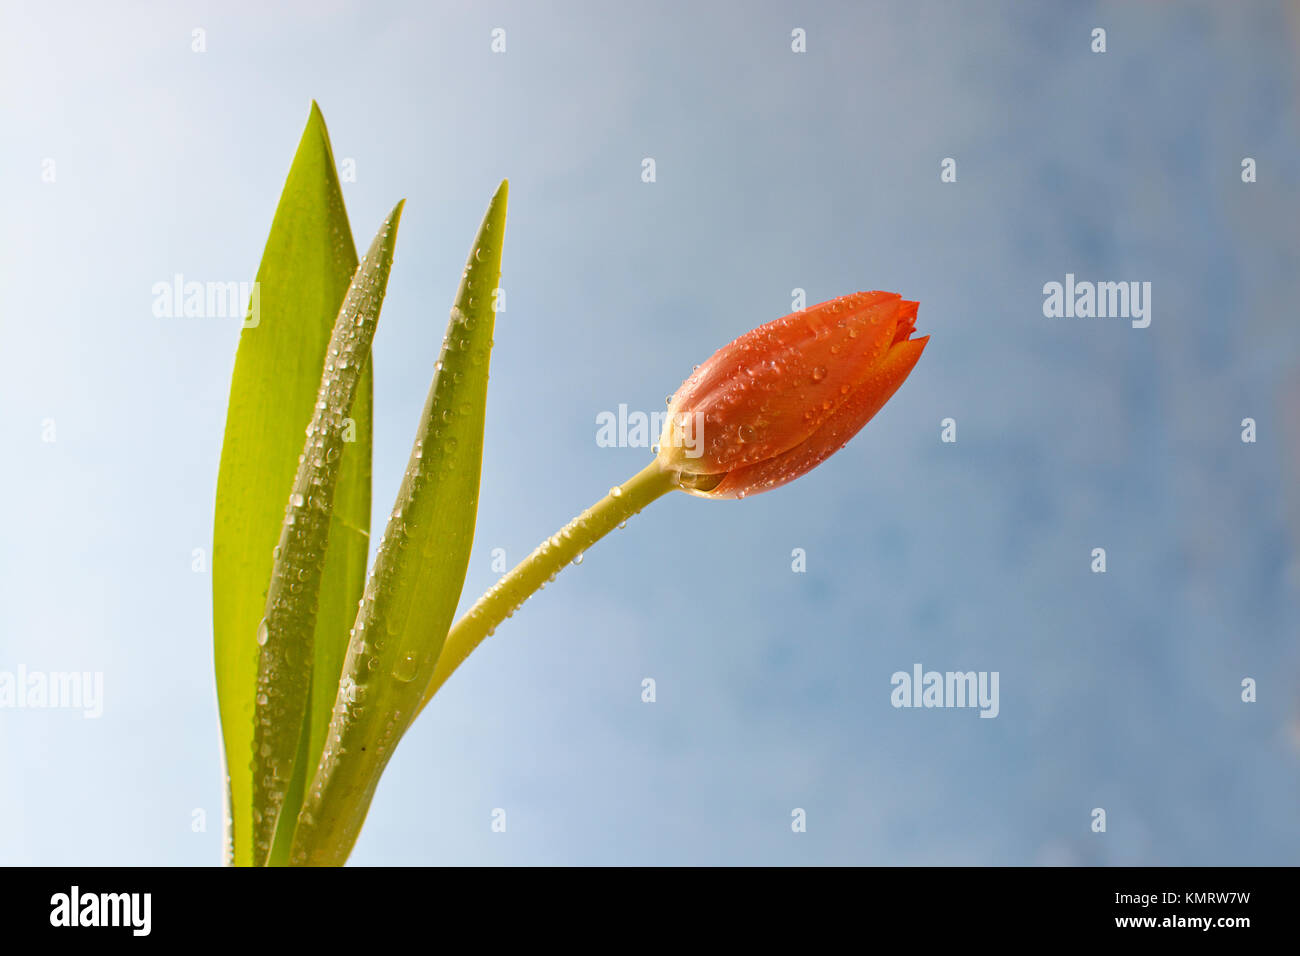 Photo horizontale d'une tulipe orange gracieux arquant contre un fond bleu. Une source de lumière douce met en lumière les étincelles de rosée. Banque D'Images